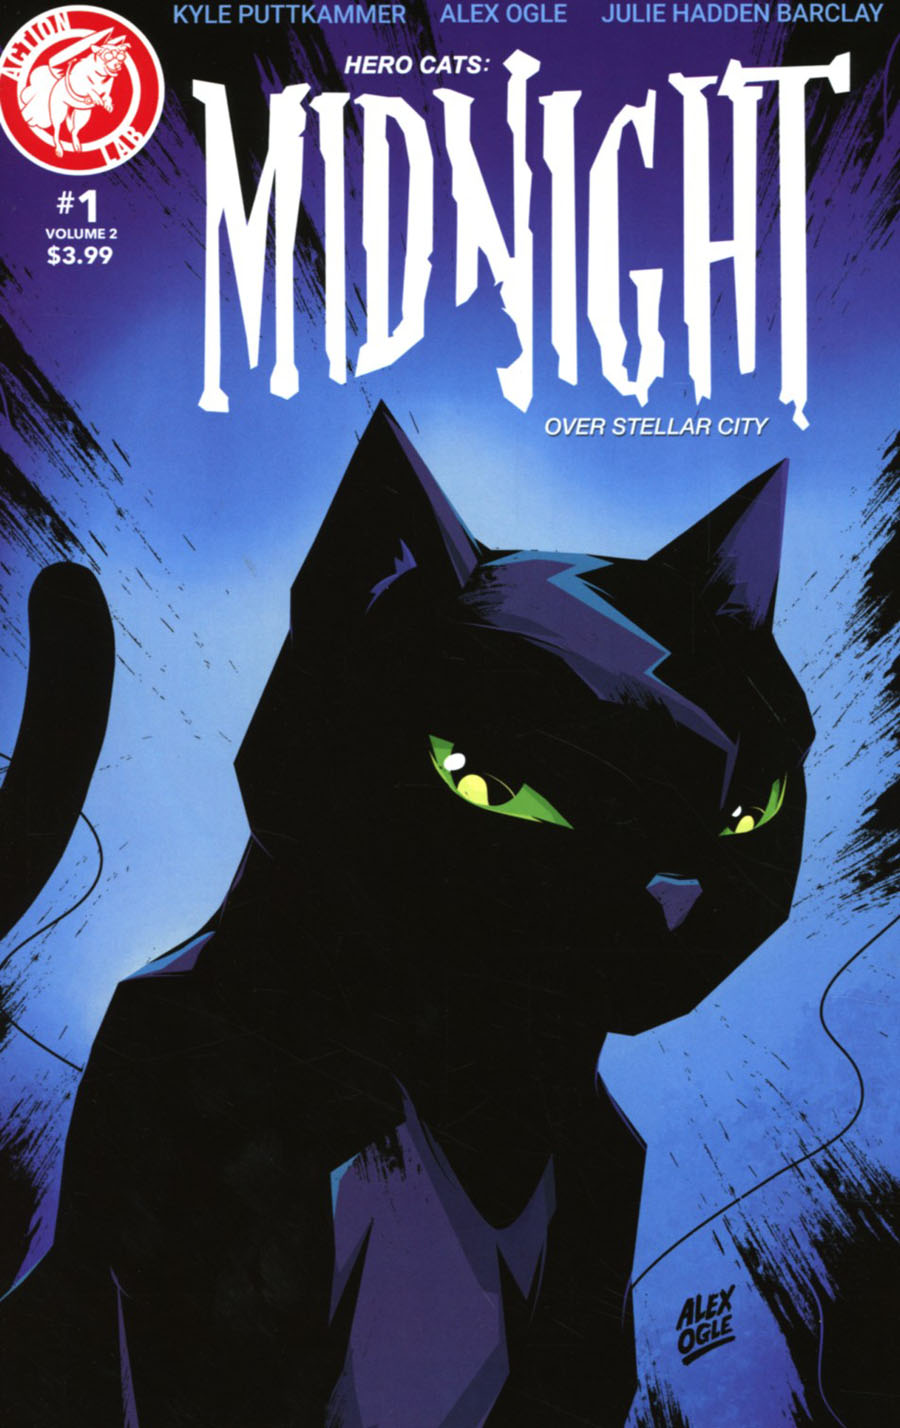 Hero Cats Midnight Over Stellar City Vol 2 #1